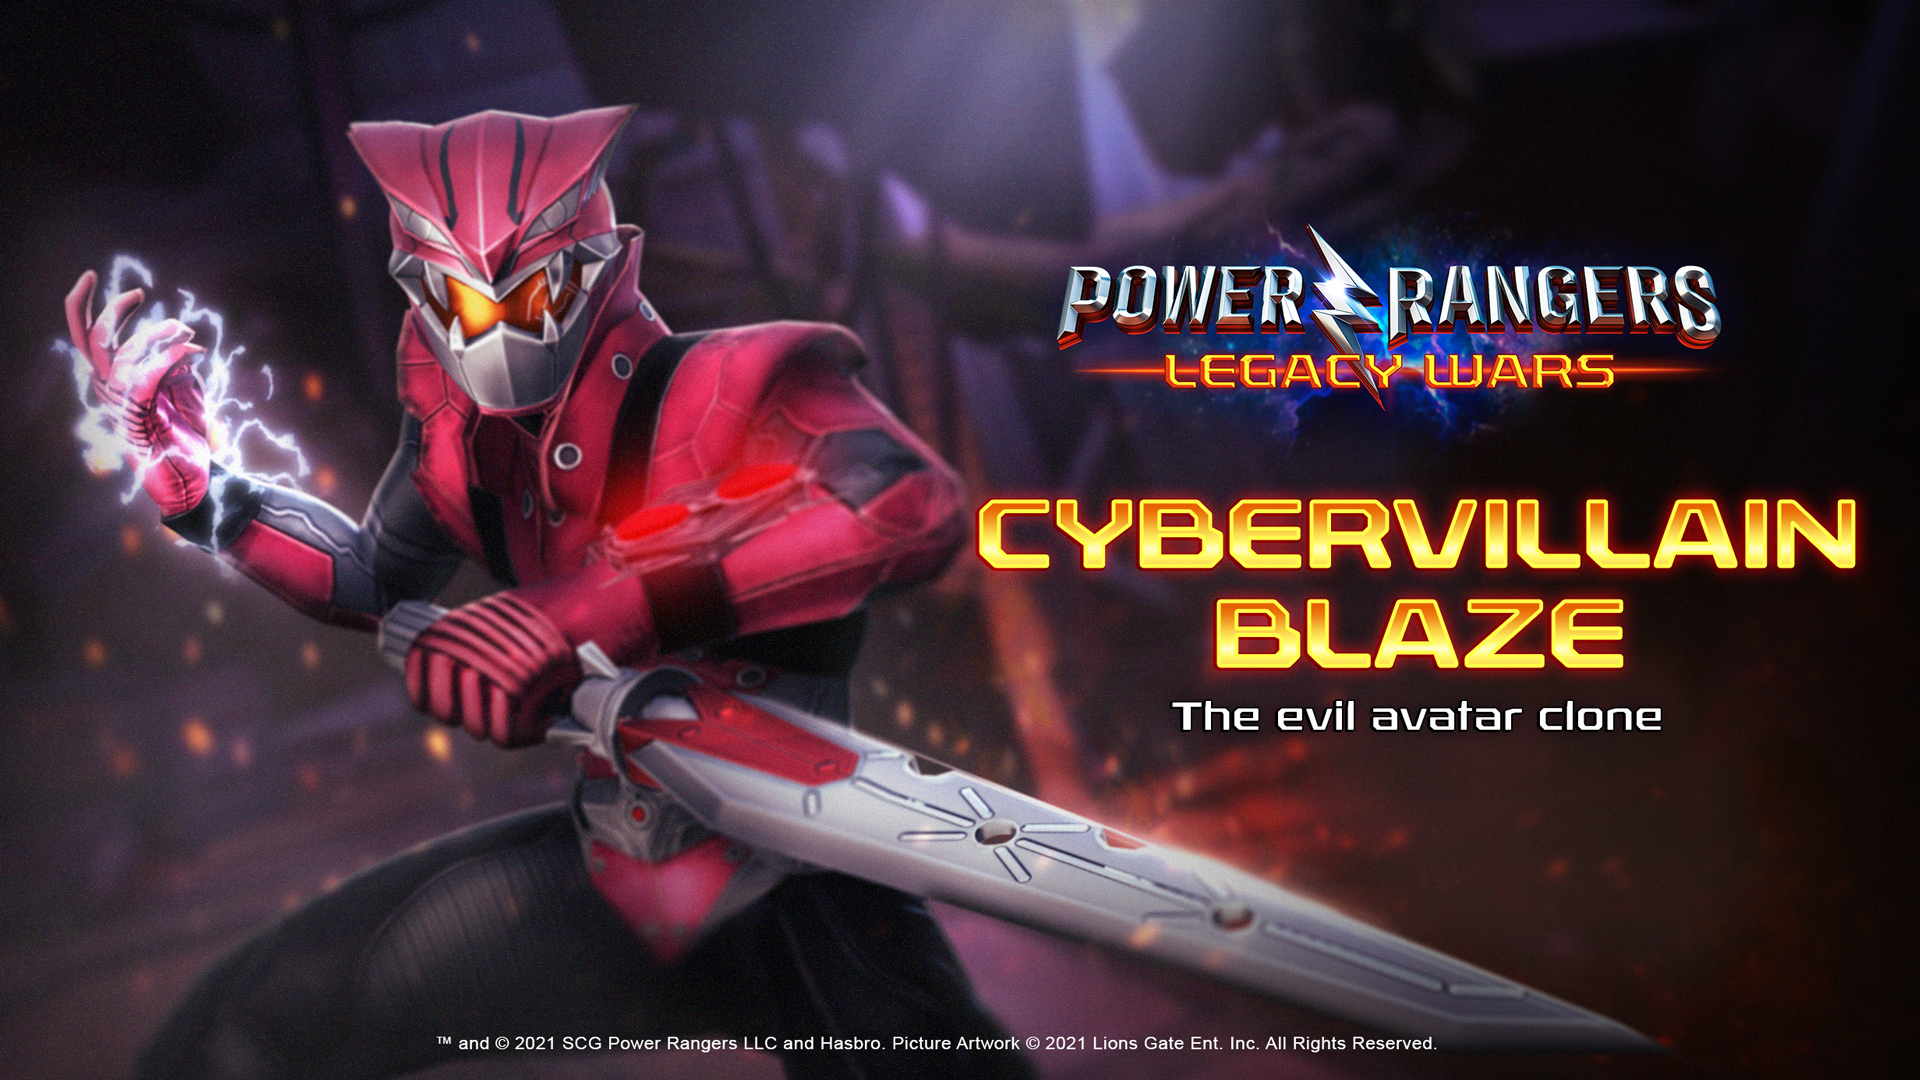 Power Rangers | Cybervillain Blaze joins the fight in Legacy Wars